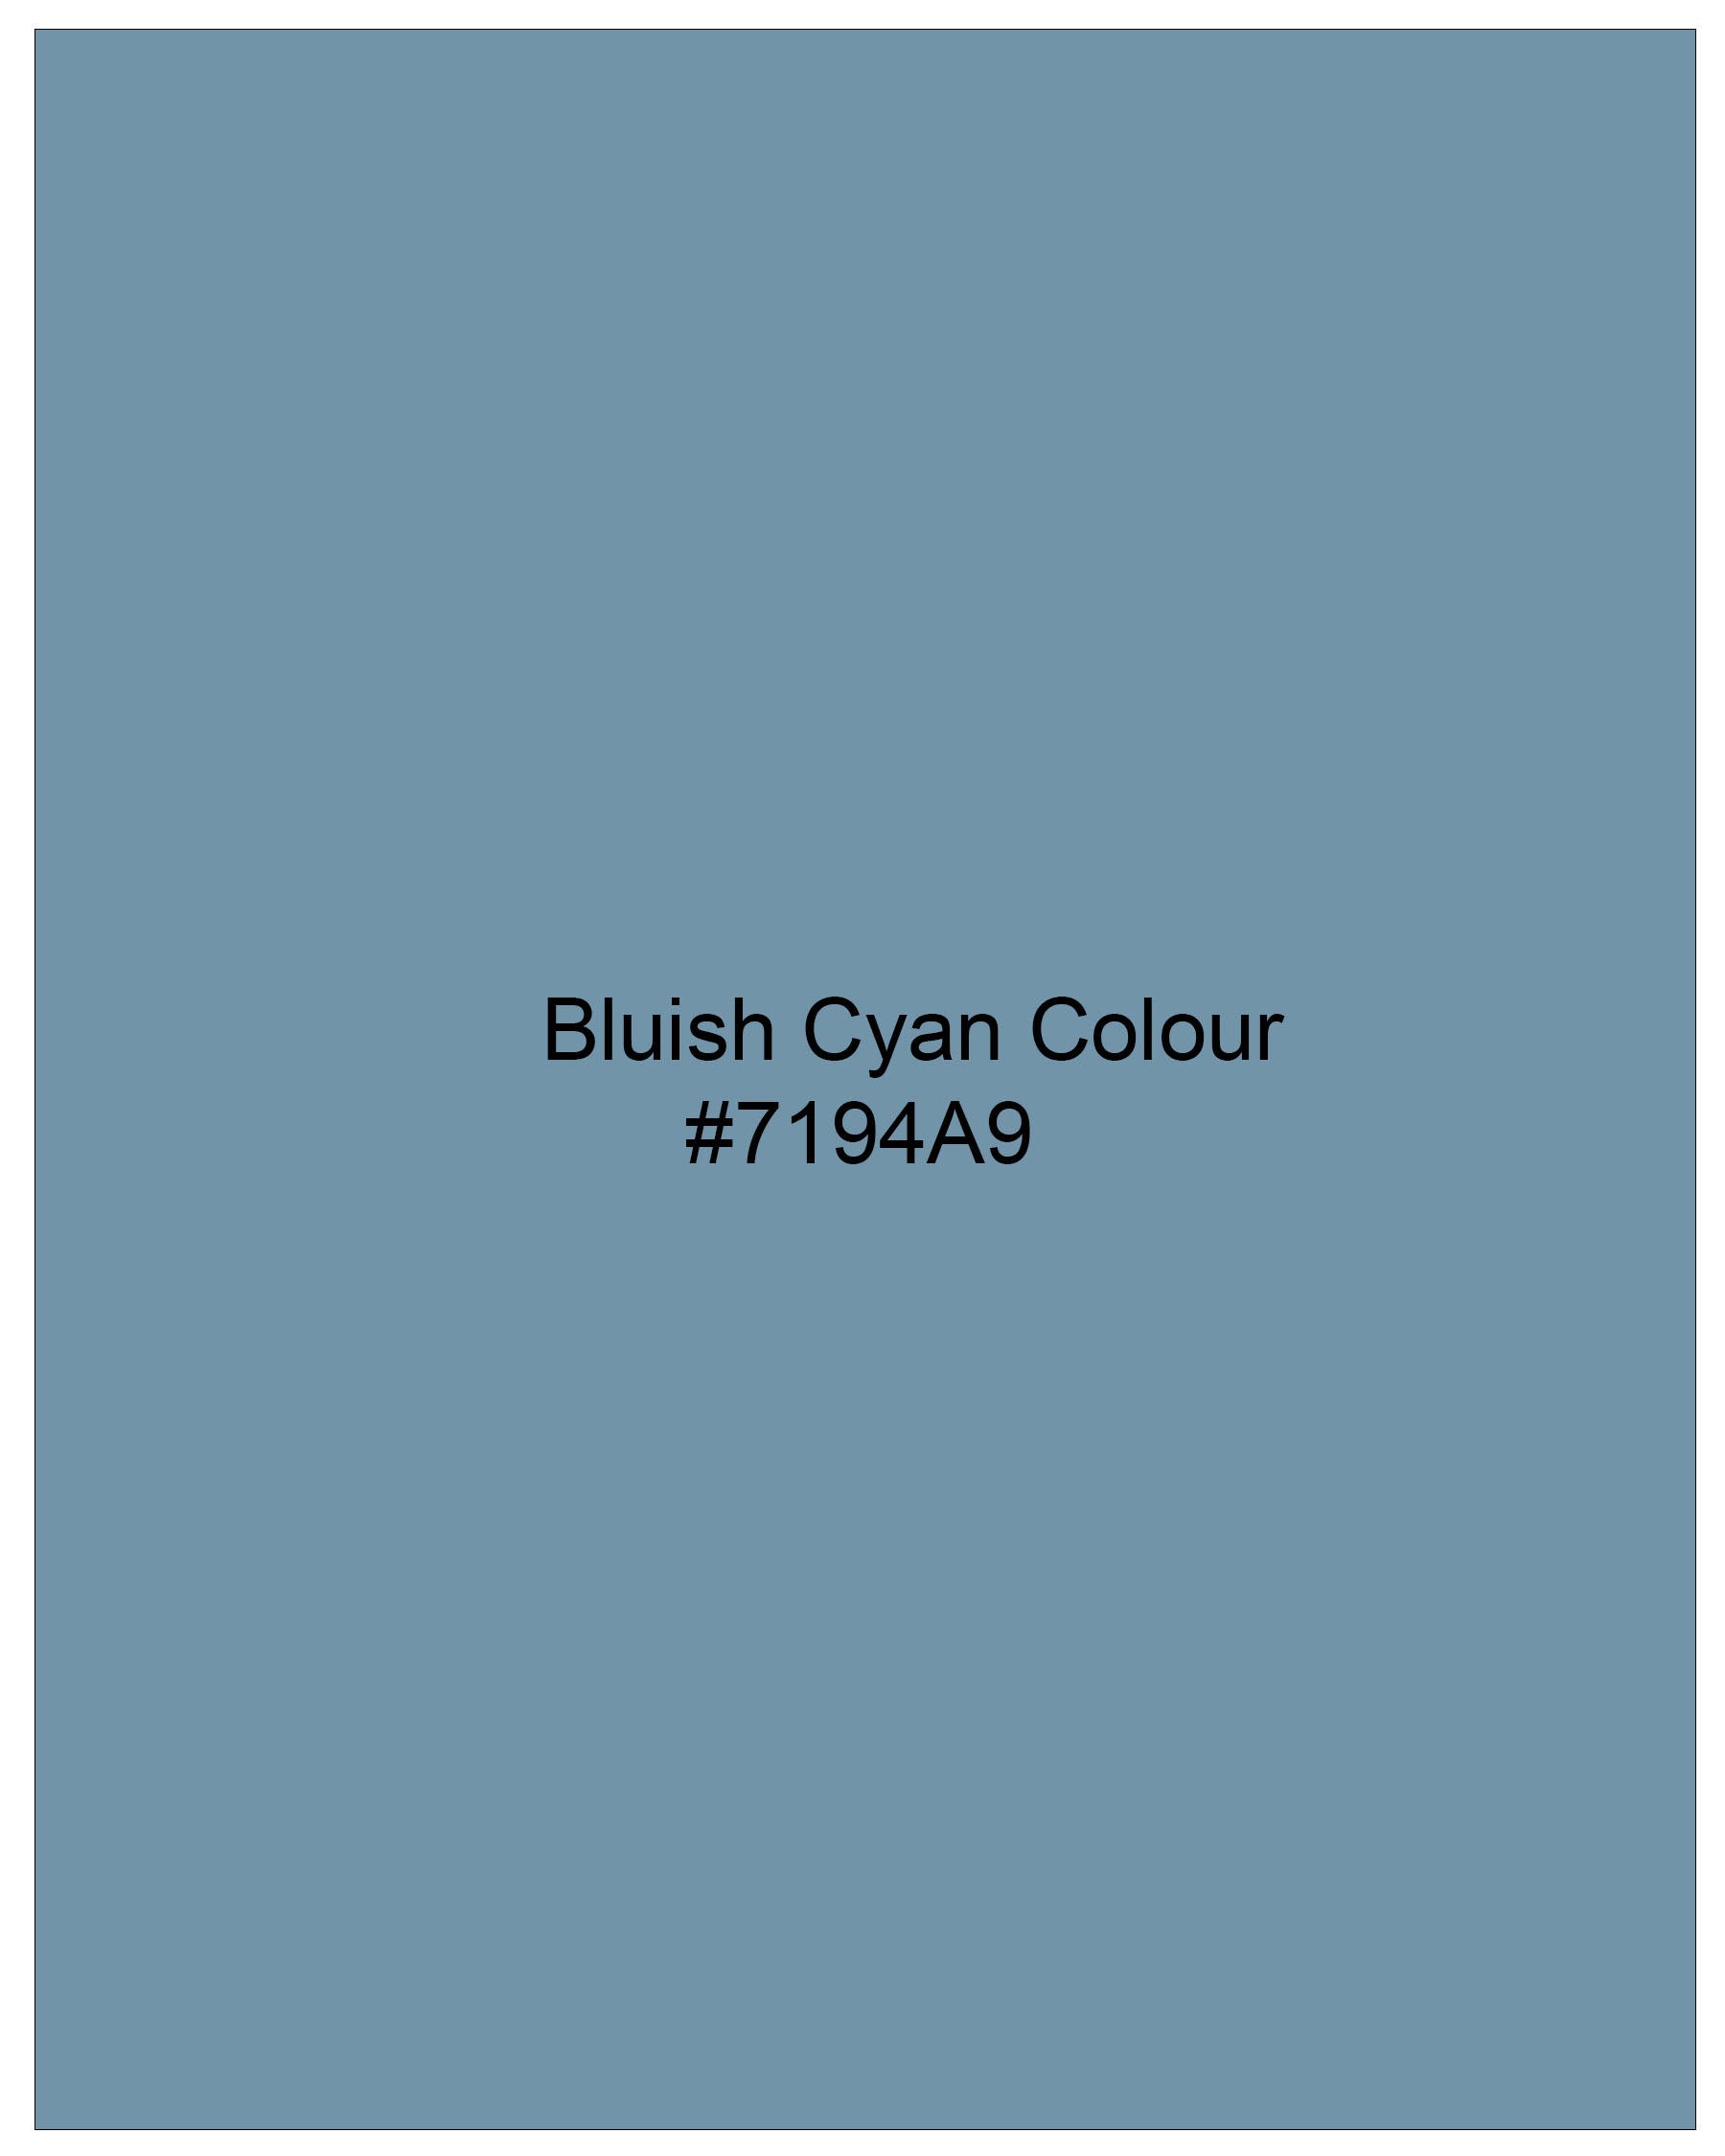 Bluish Cyan Blue Super Soft Premium Cotton Shirt 7999-CA-38,7999-CA-H-38,7999-CA-39,7999-CA-H-39,7999-CA-40,7999-CA-H-40,7999-CA-42,7999-CA-H-42,7999-CA-44,7999-CA-H-44,7999-CA-46,7999-CA-H-46,7999-CA-48,7999-CA-H-48,7999-CA-50,7999-CA-H-50,7999-CA-52,7999-CA-H-52